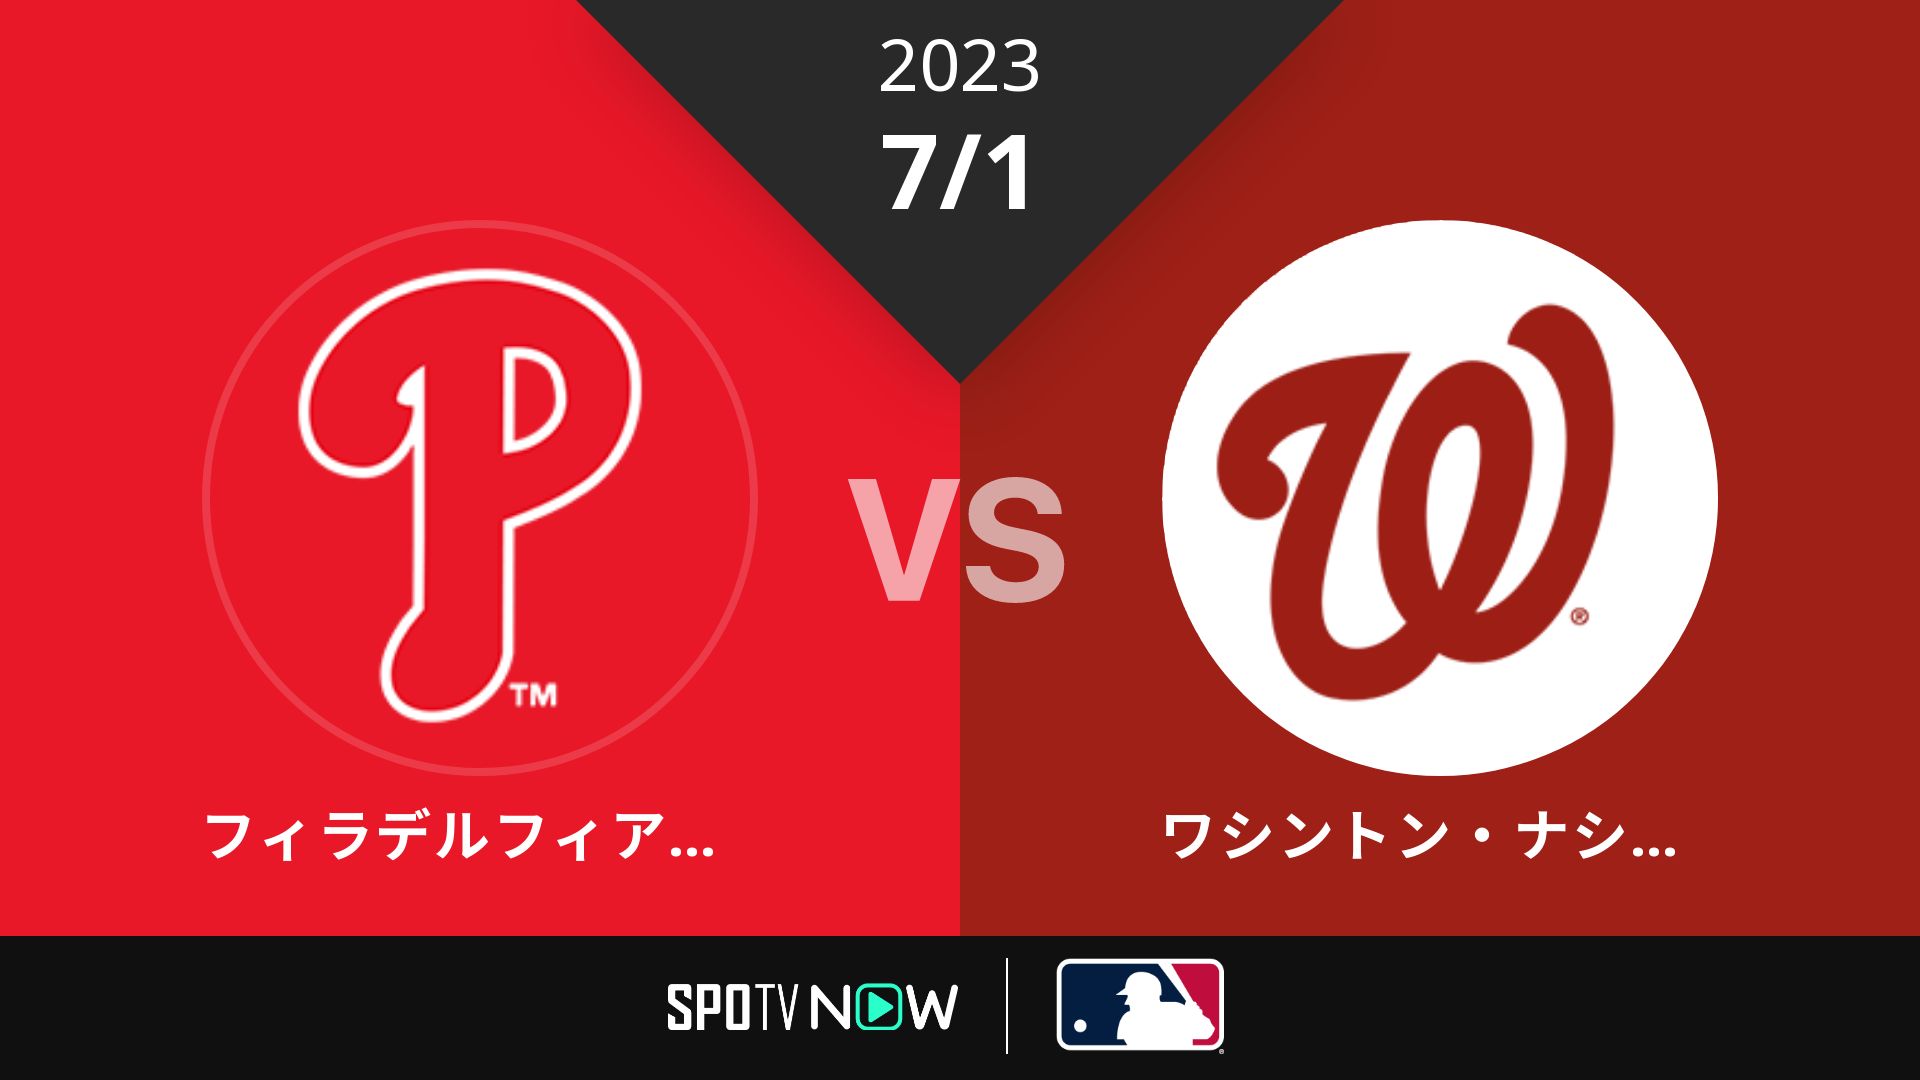 2023/7/1 フィリーズ vs ナショナルズ [MLB]